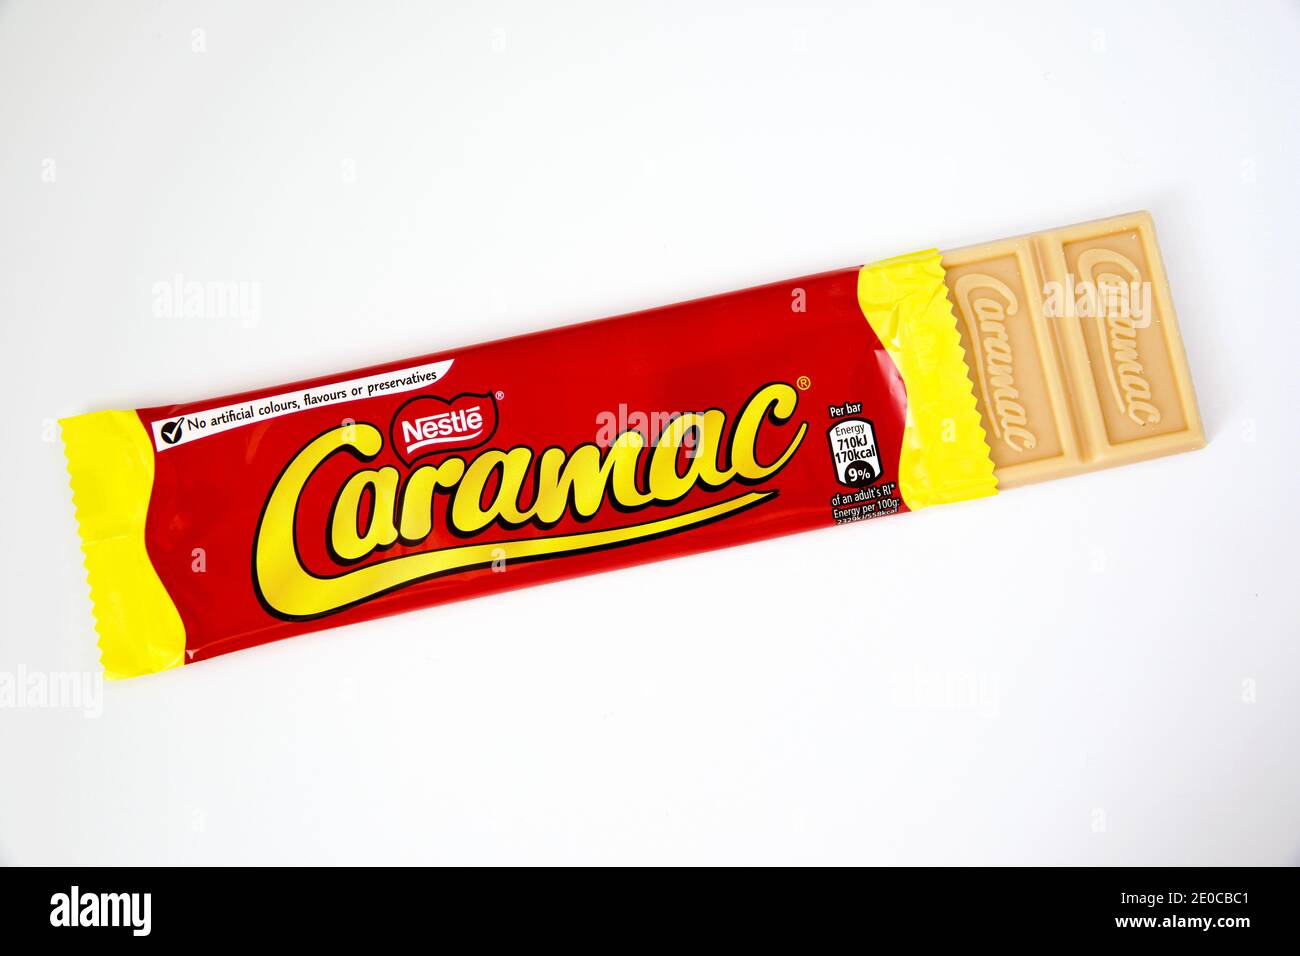 Nestlé Caramac Chocolate Bar Stock Photo